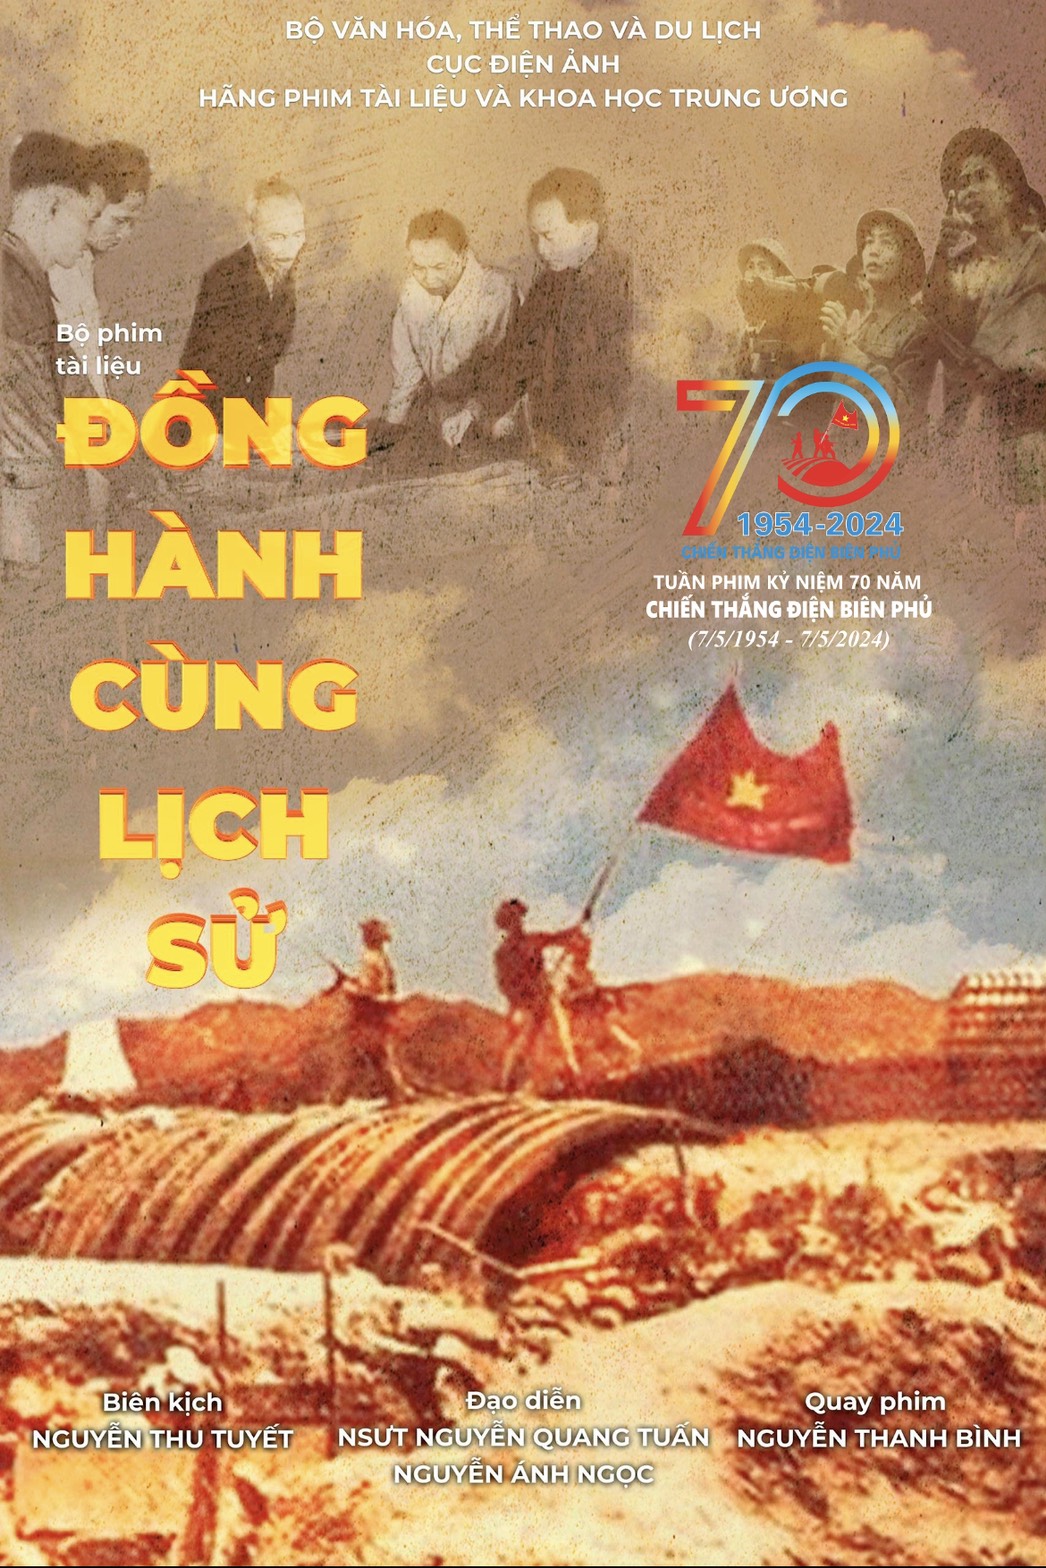 Những bộ phim đặc sắc trong Tuần phim Kỷ niệm 70 năm Chiến thắng Điện Biên Phủ (7/5/1954-7/5/2024) - Ảnh 1.